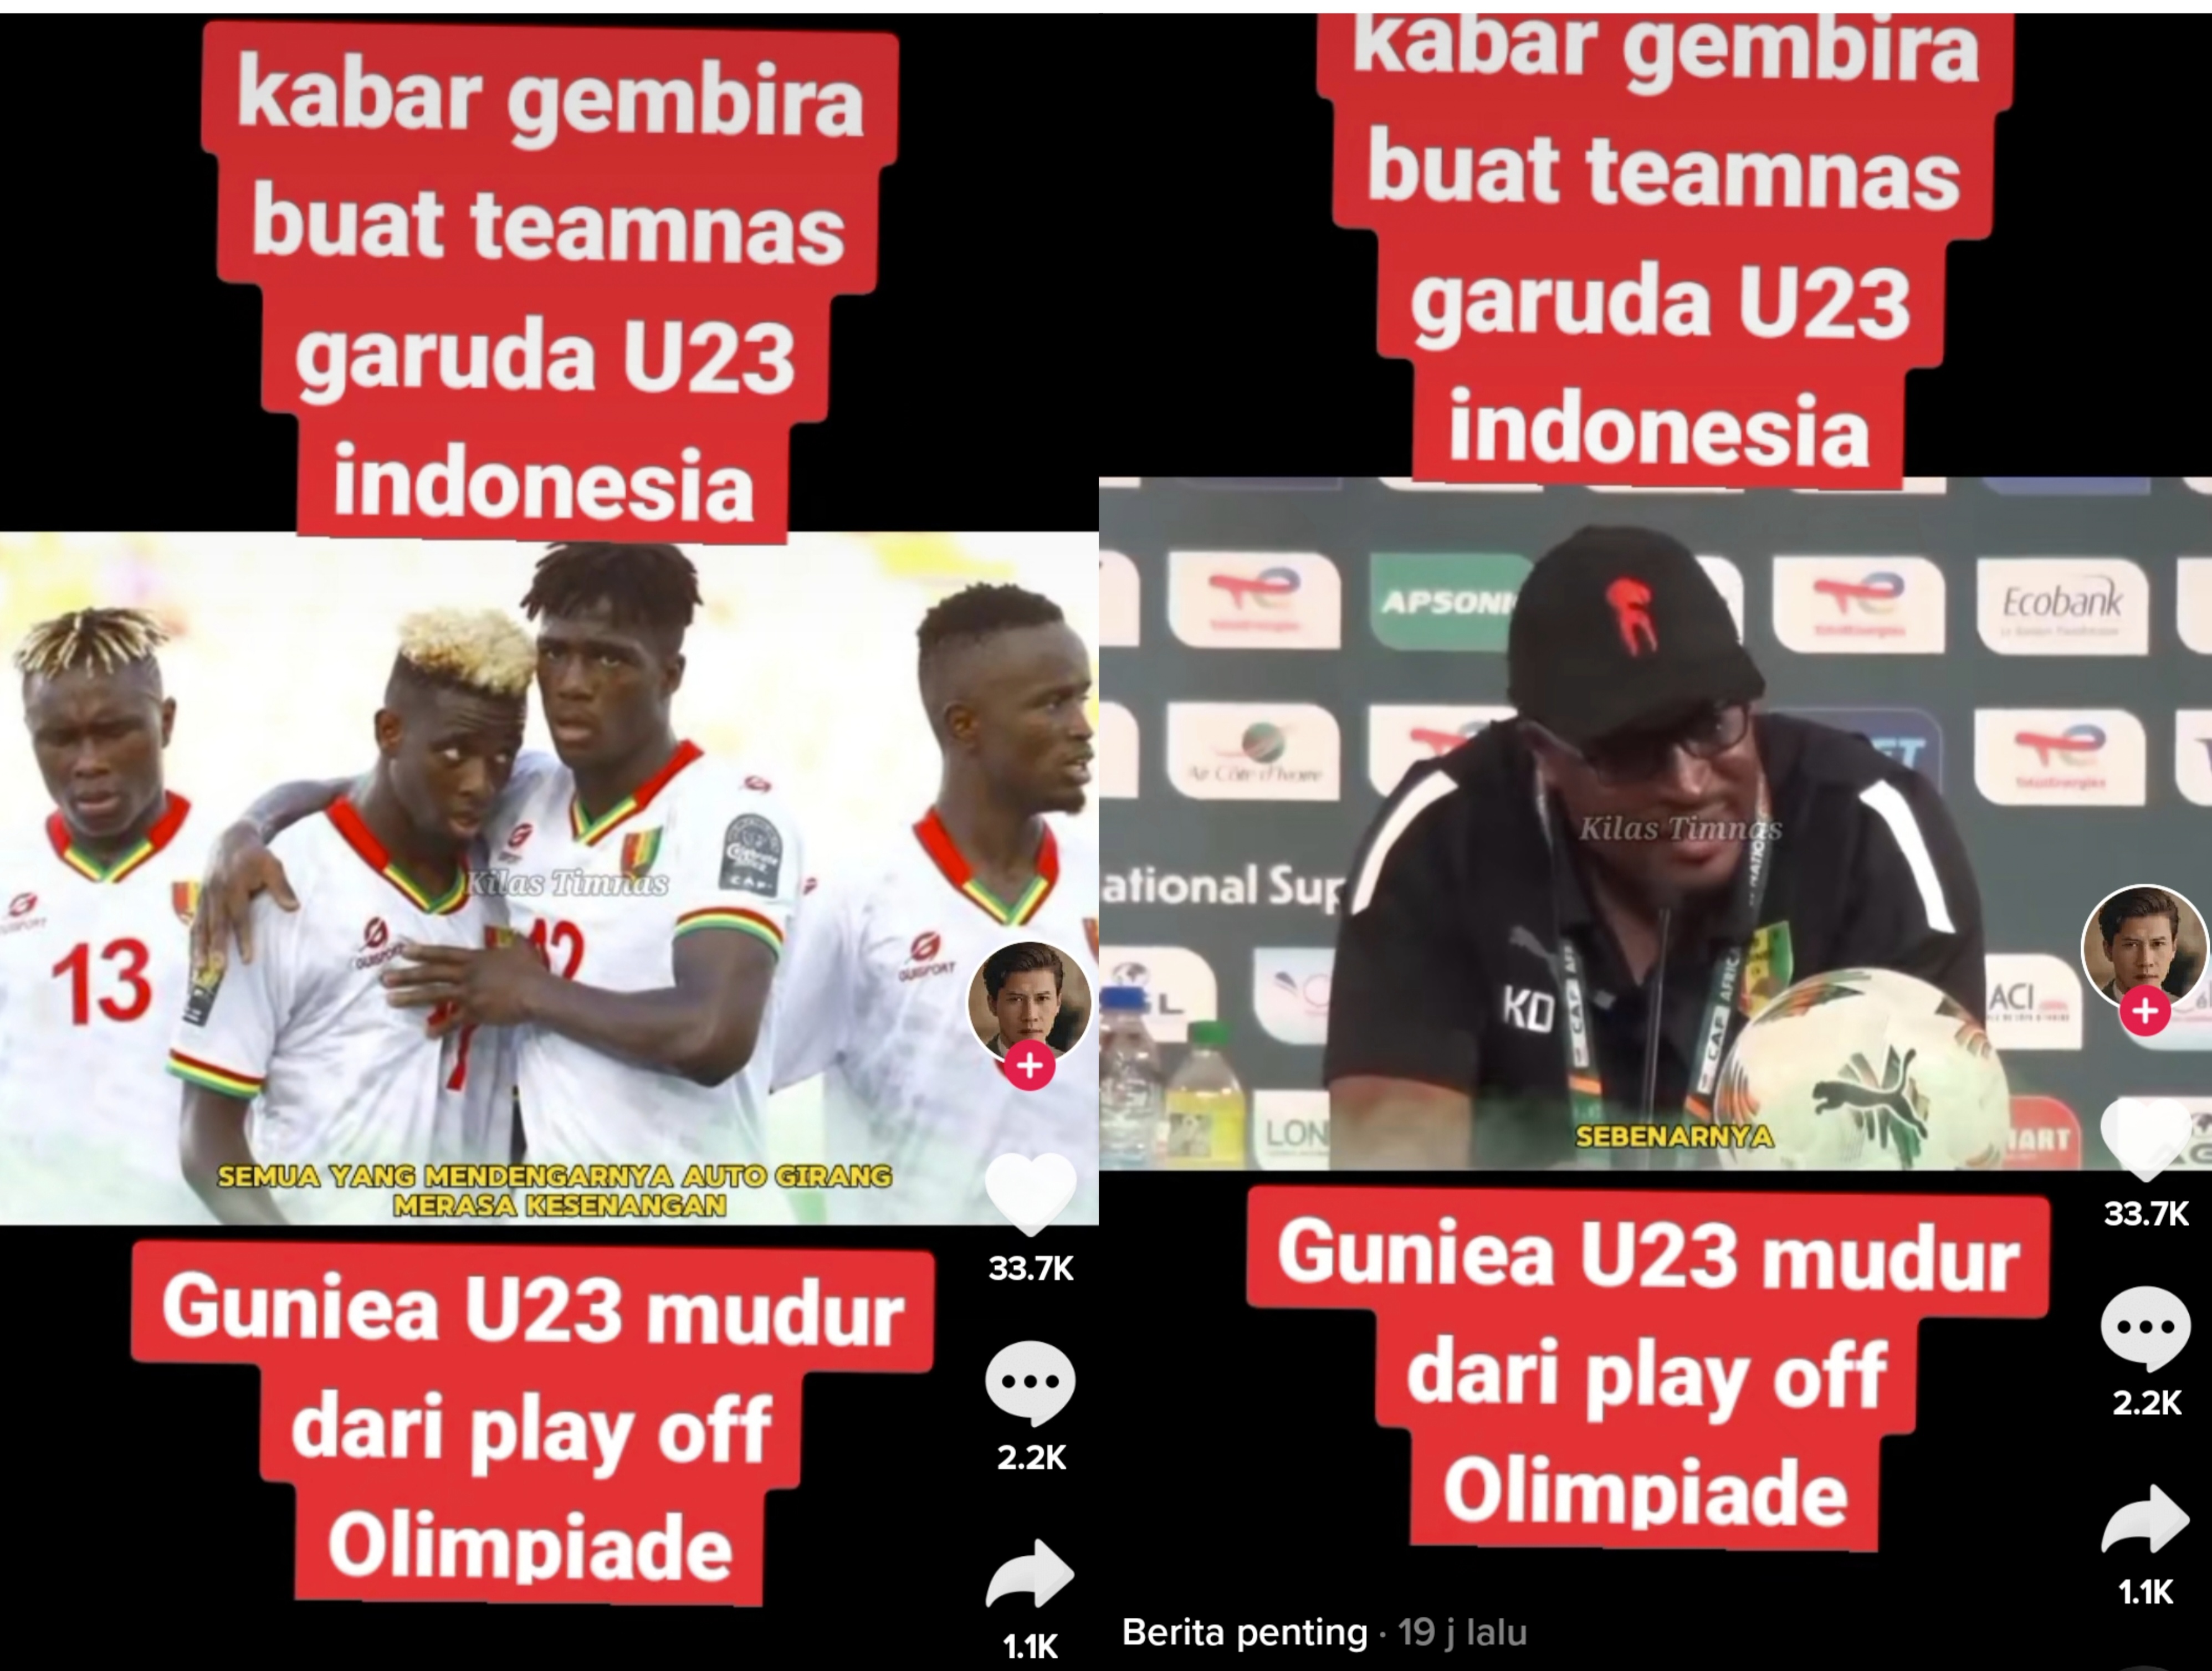 Heboh Rumor Timnas Guinea U-23 Mundur Dari Babak Playoff, Warganet: Alhamdulillah!